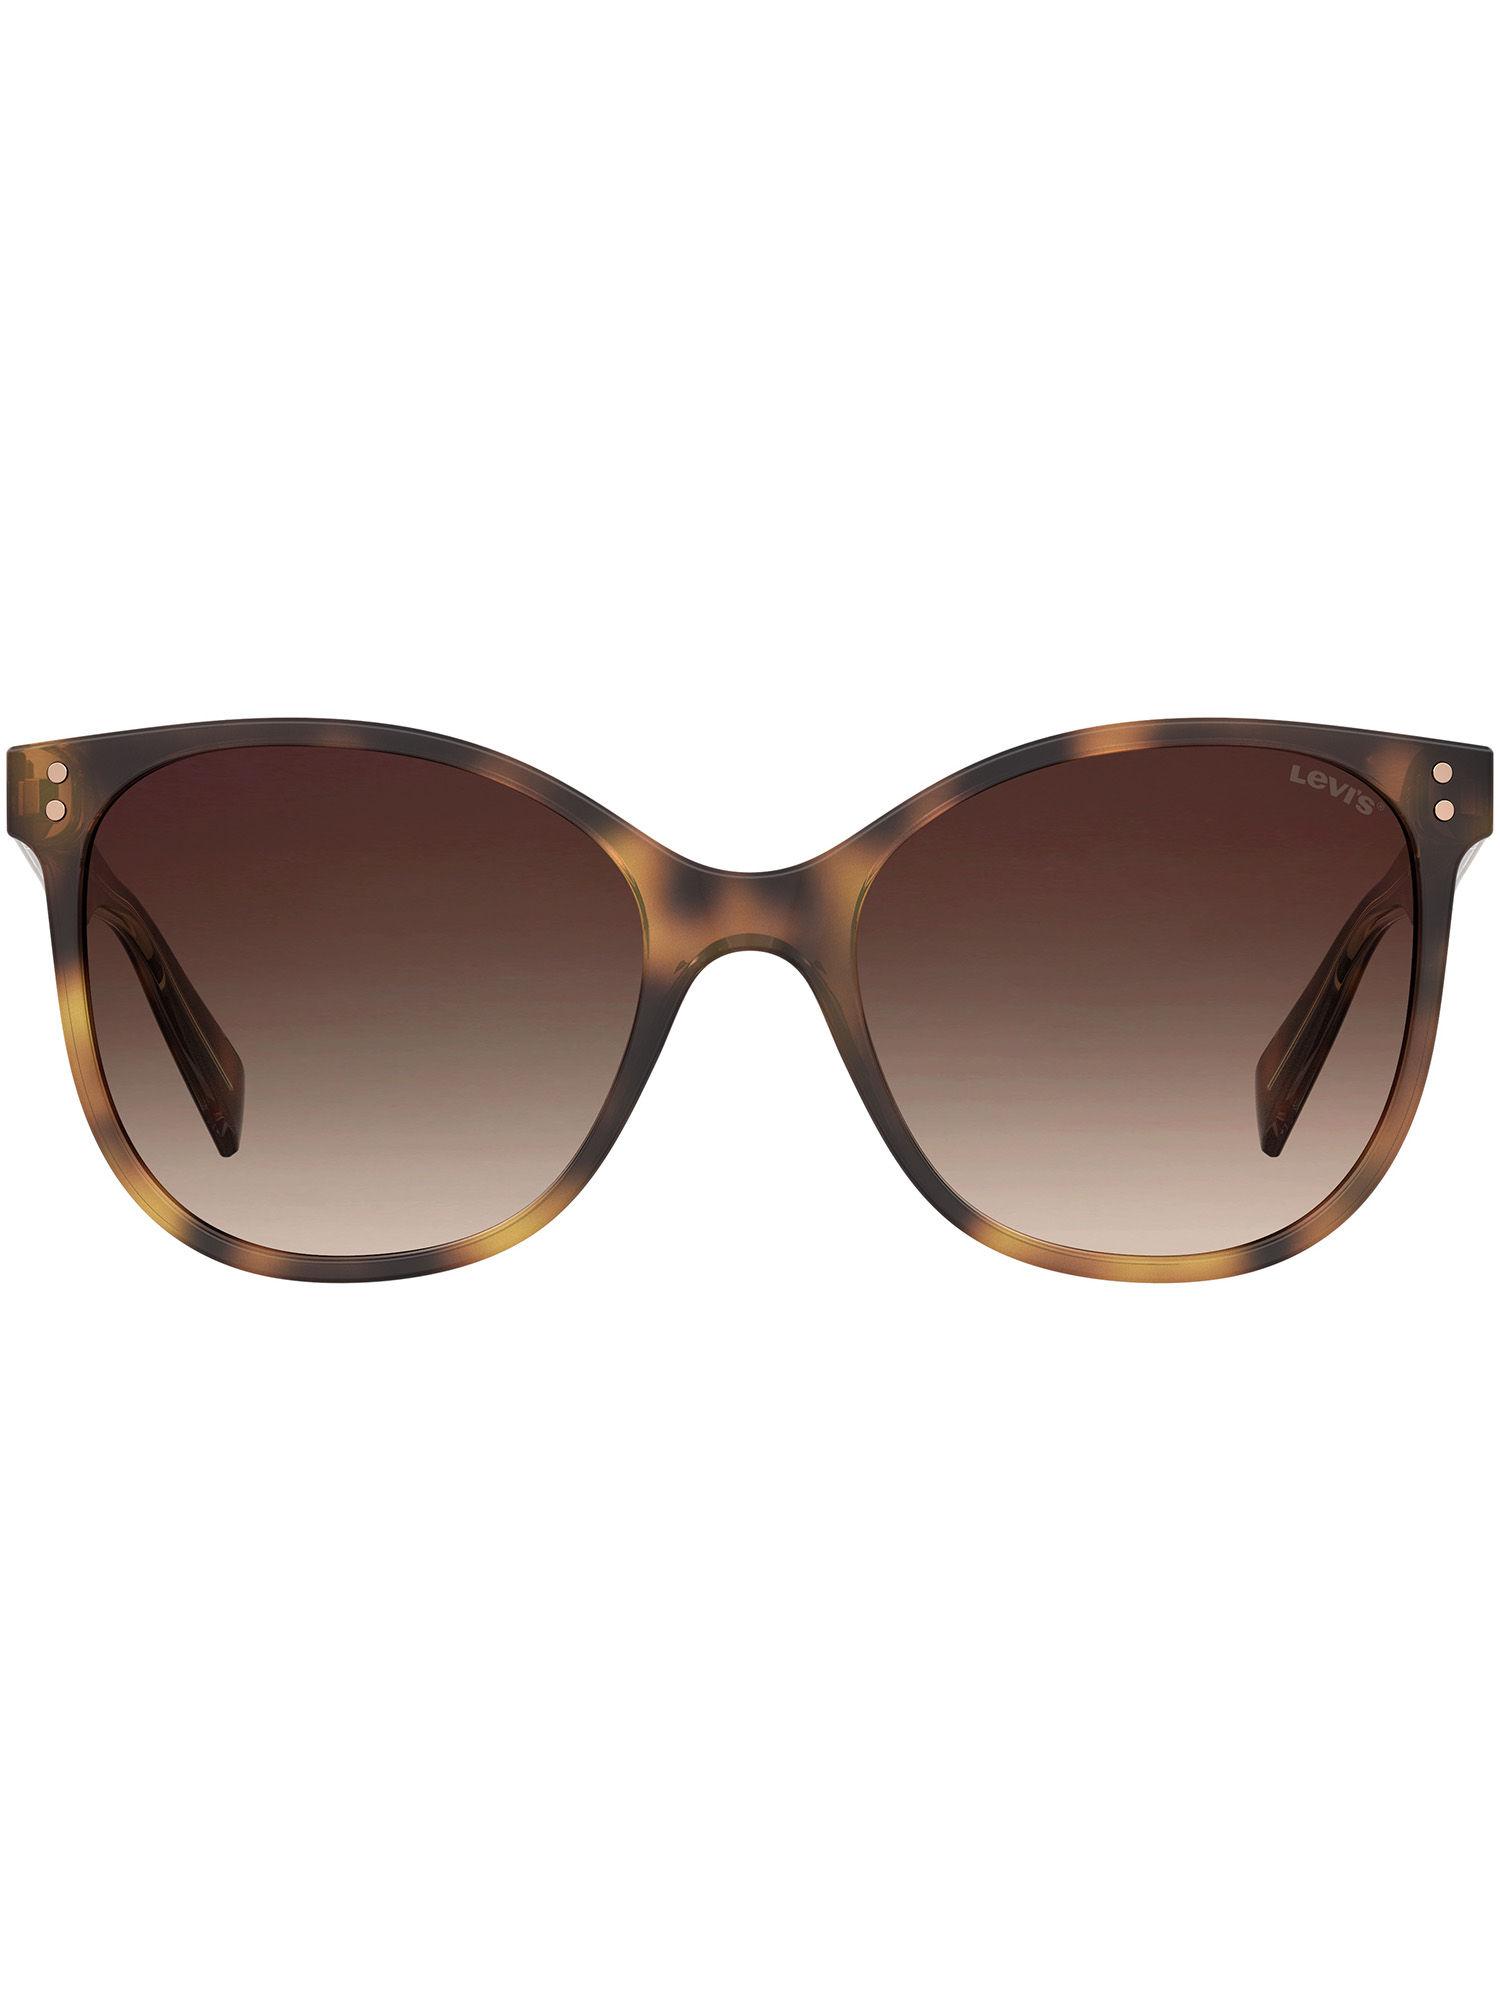 square sunglasses for women eco pmma material in havana 2 colour (lv 5009/s 05l 56ha)